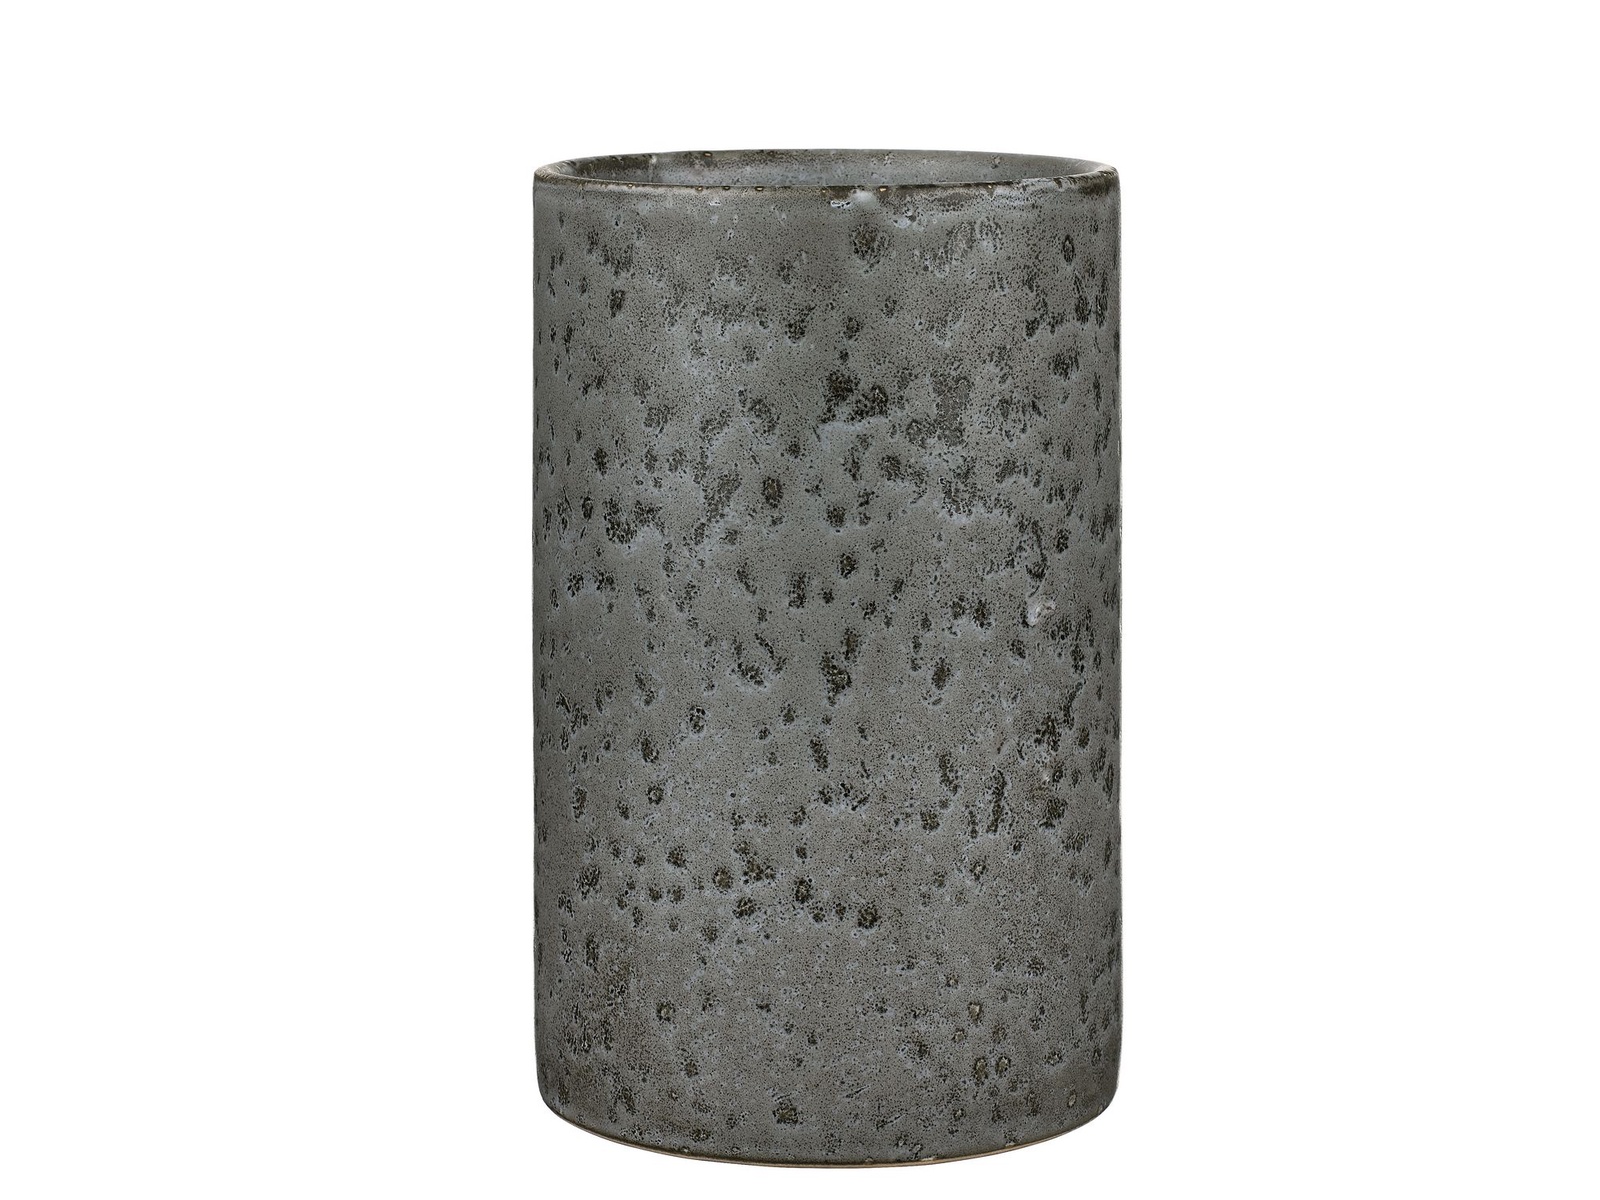 фото Ведерко Bitz для охлаждения вина, керамическое, цвет: серый, высота 19 см. BT821116